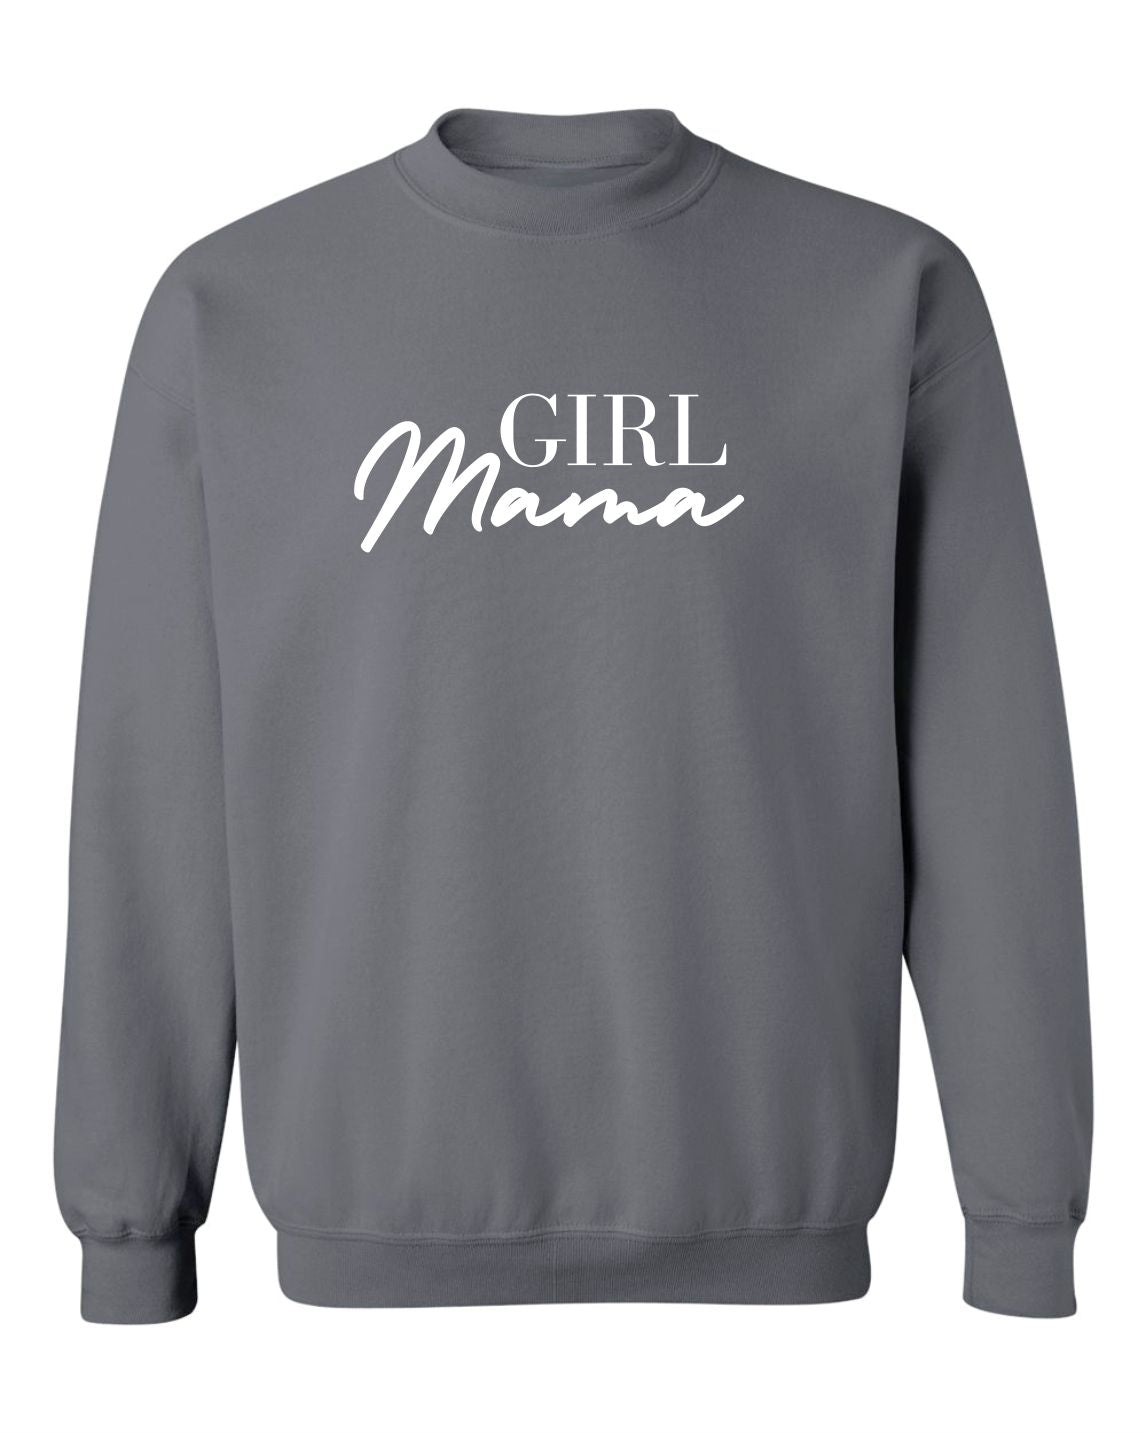 "Girl Mama" Unisex Crewneck Sweatshirt